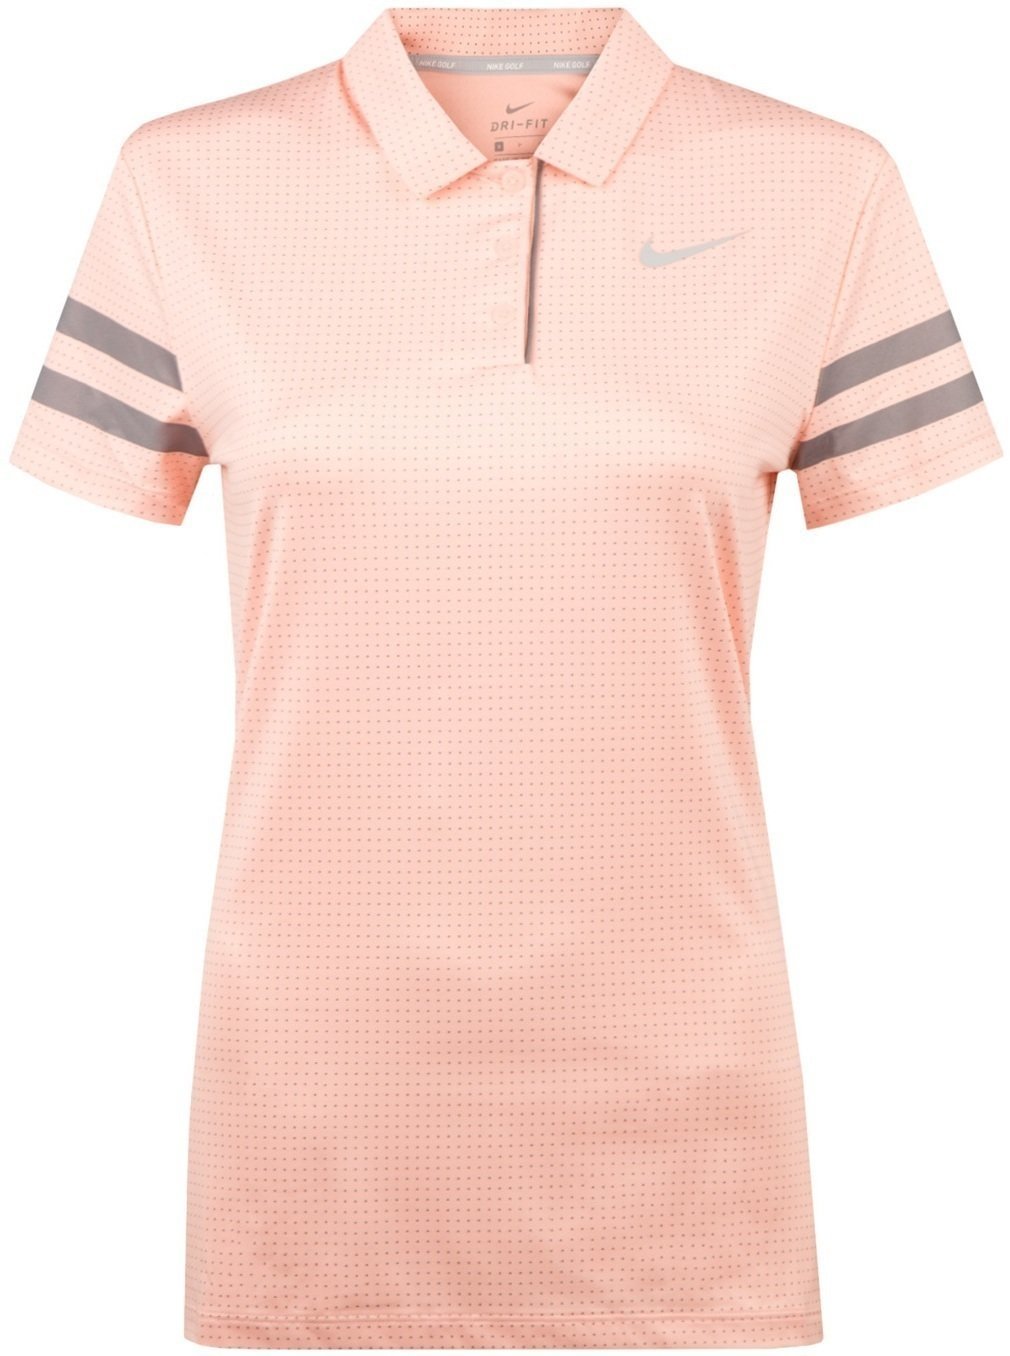 Πουκάμισα Πόλο Nike Dri-Fit Printed Womens Polo Storm Pink/Anthracite/White XS